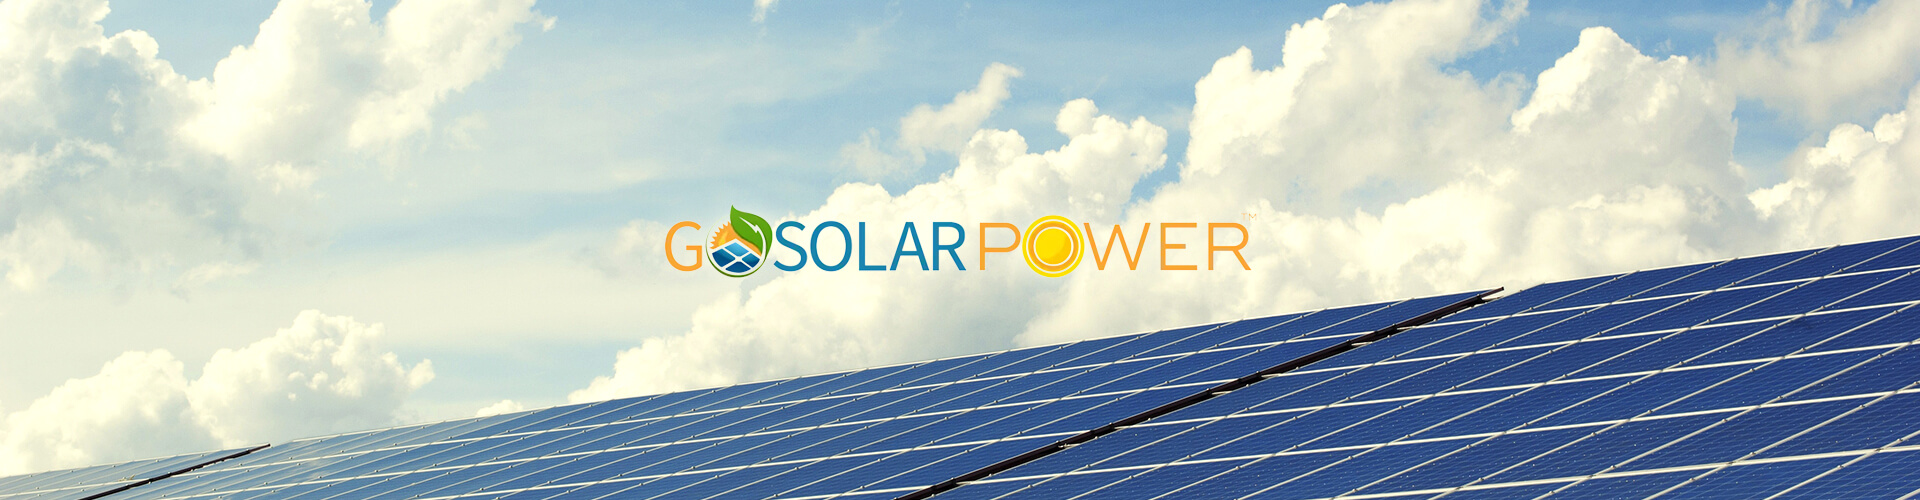 Go Solar Power banner